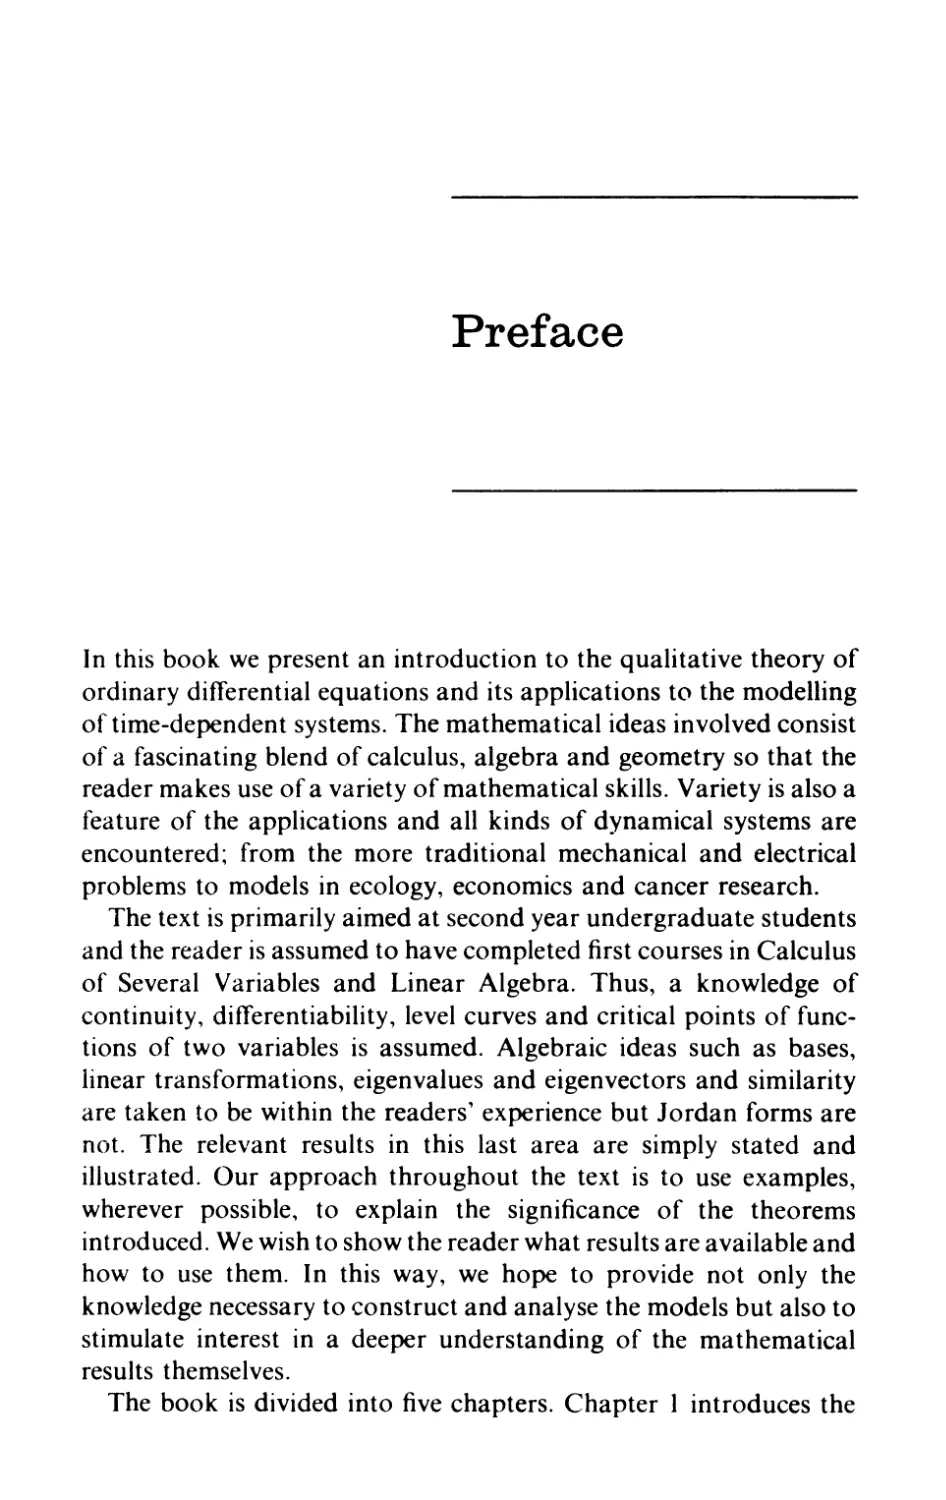 Preface page